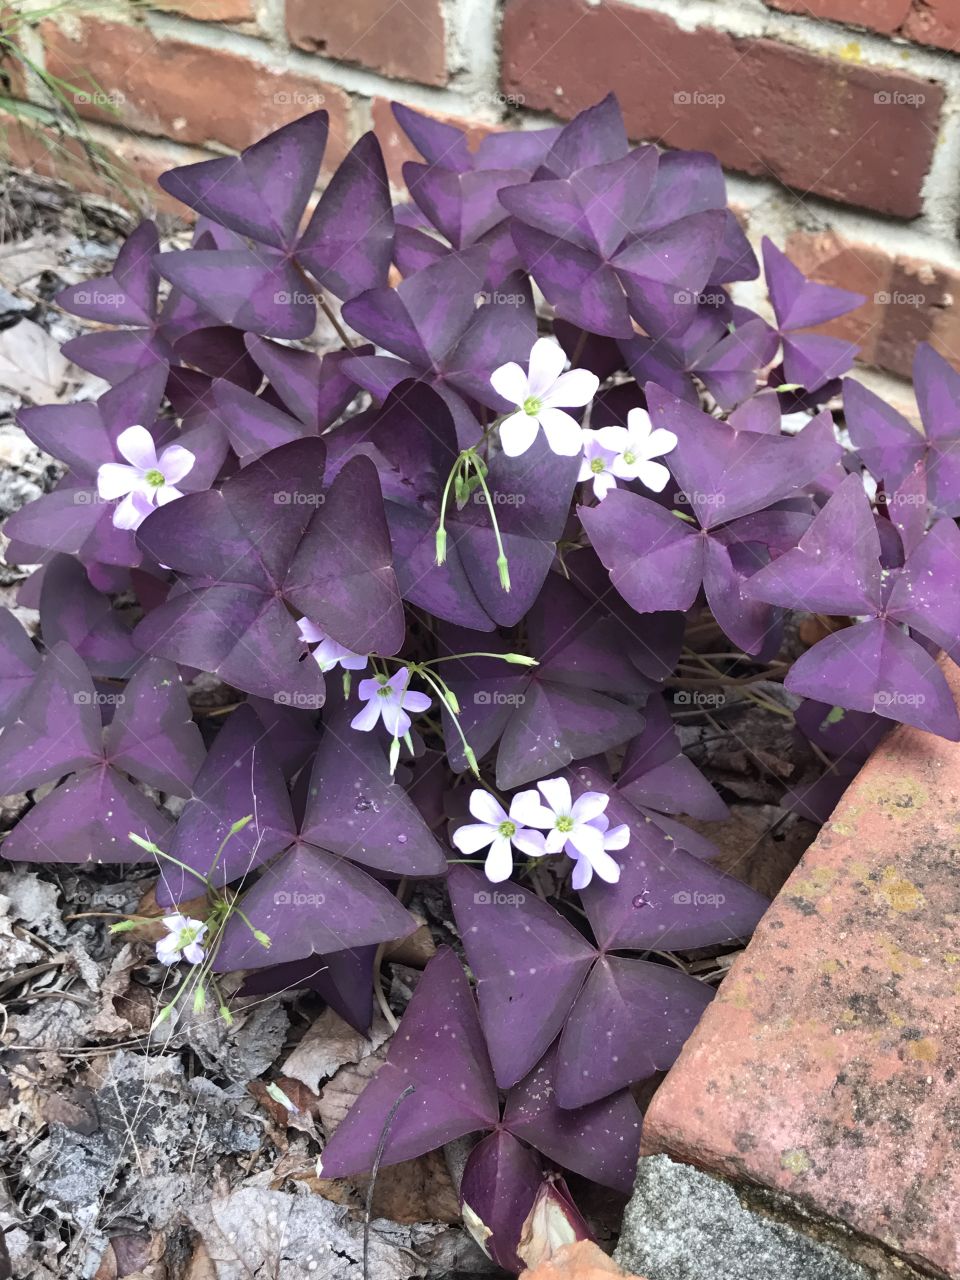 Amazing purple flowers in my momma garden 